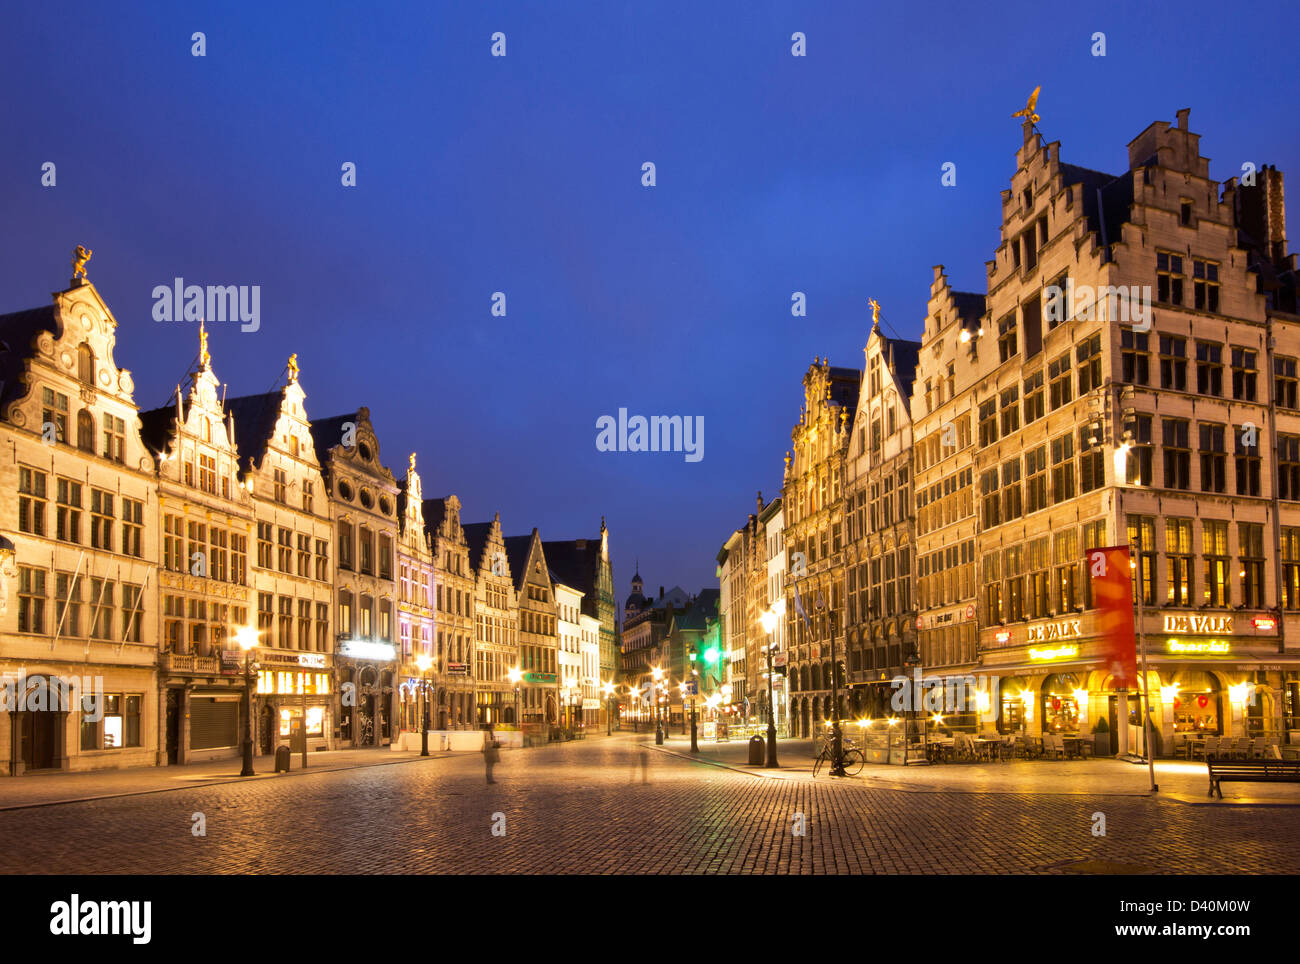 Anversa di notte - Diamond strada pedonale circondata da antiche case. Foto Stock